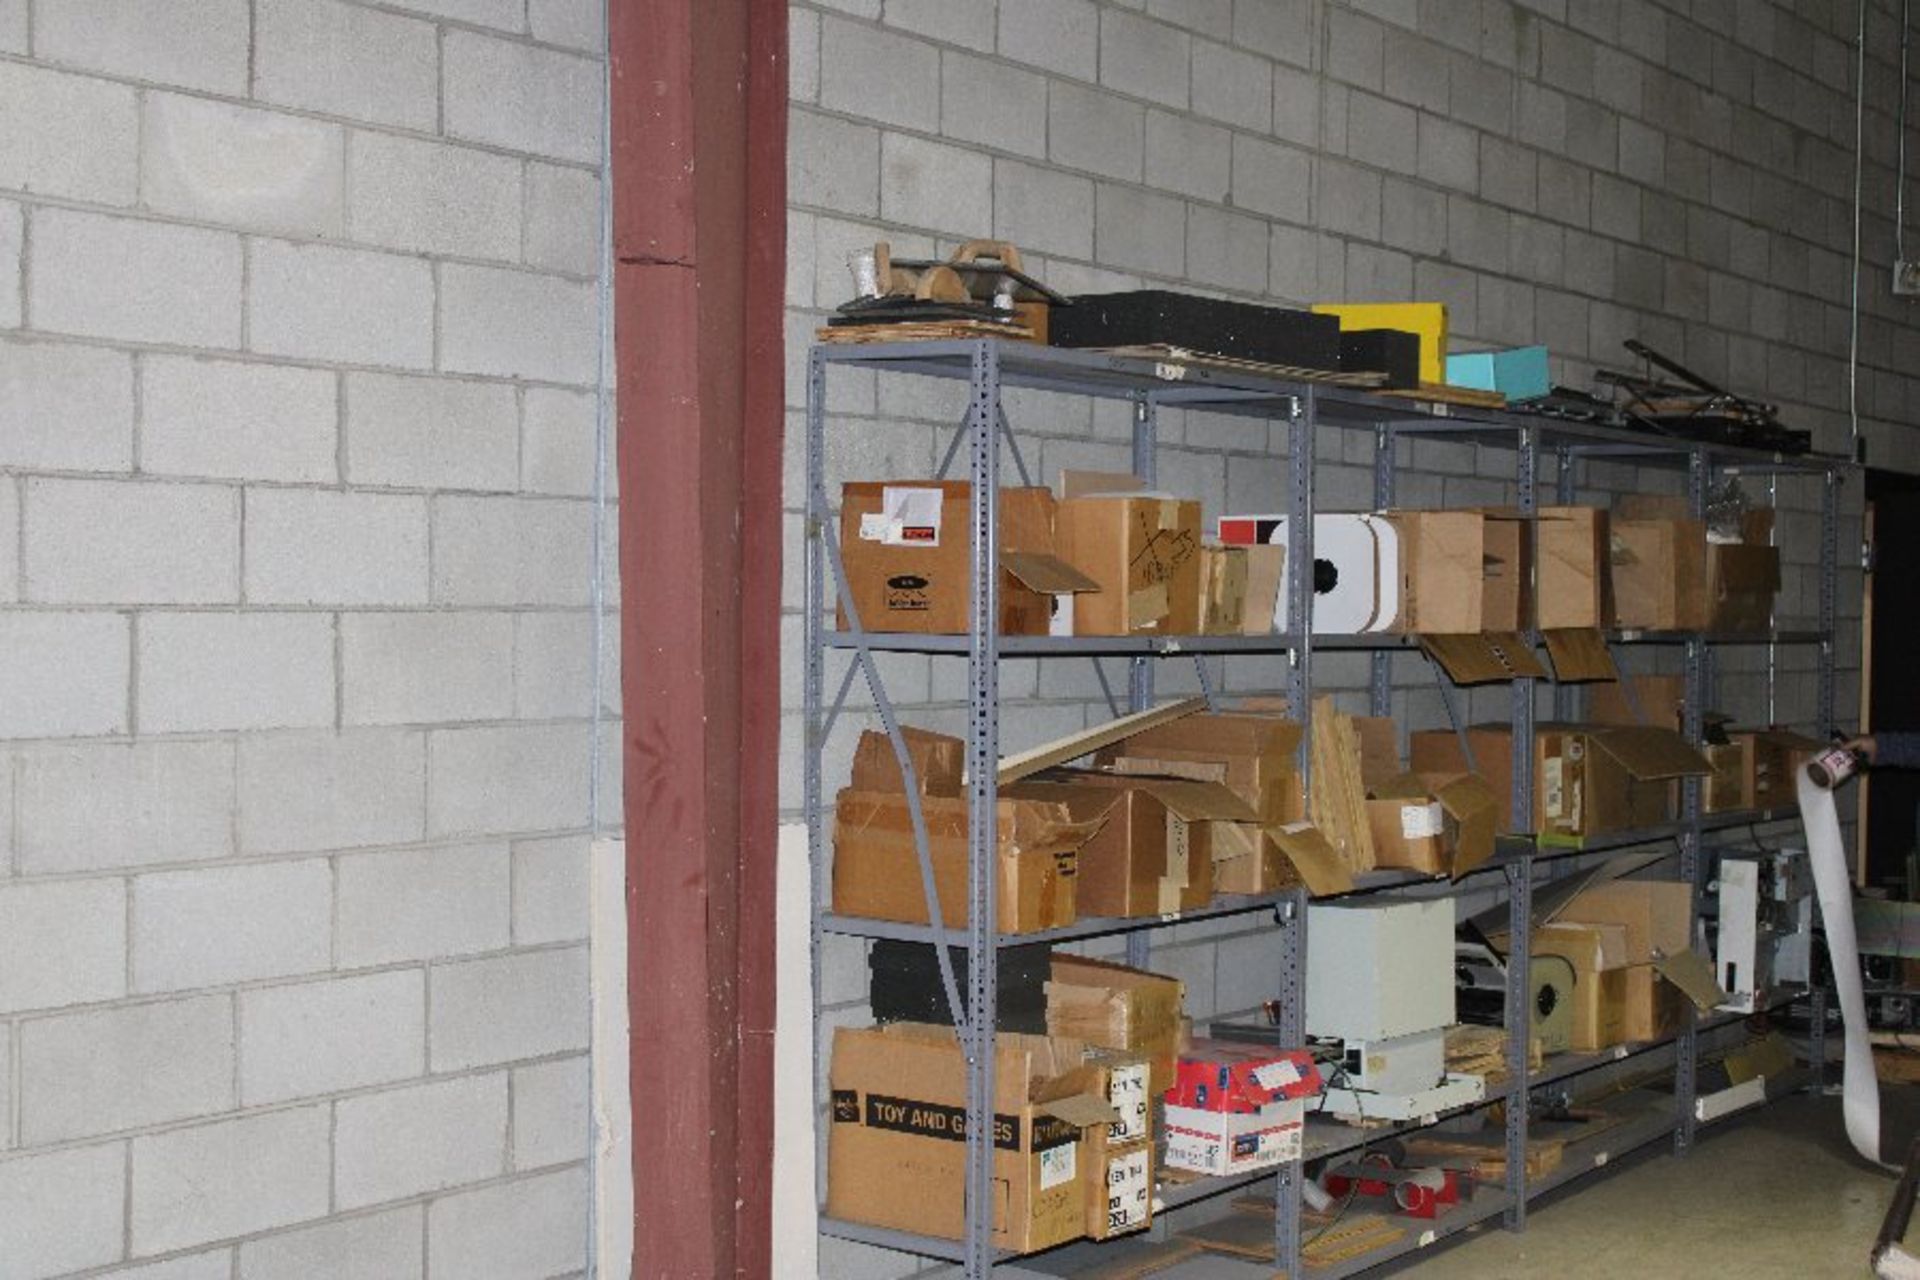 2 Door Metal Storage Cabinets (5) Sections of Adjustable Metal Shelving (1) Wooden Shelf w/ - Image 2 of 2